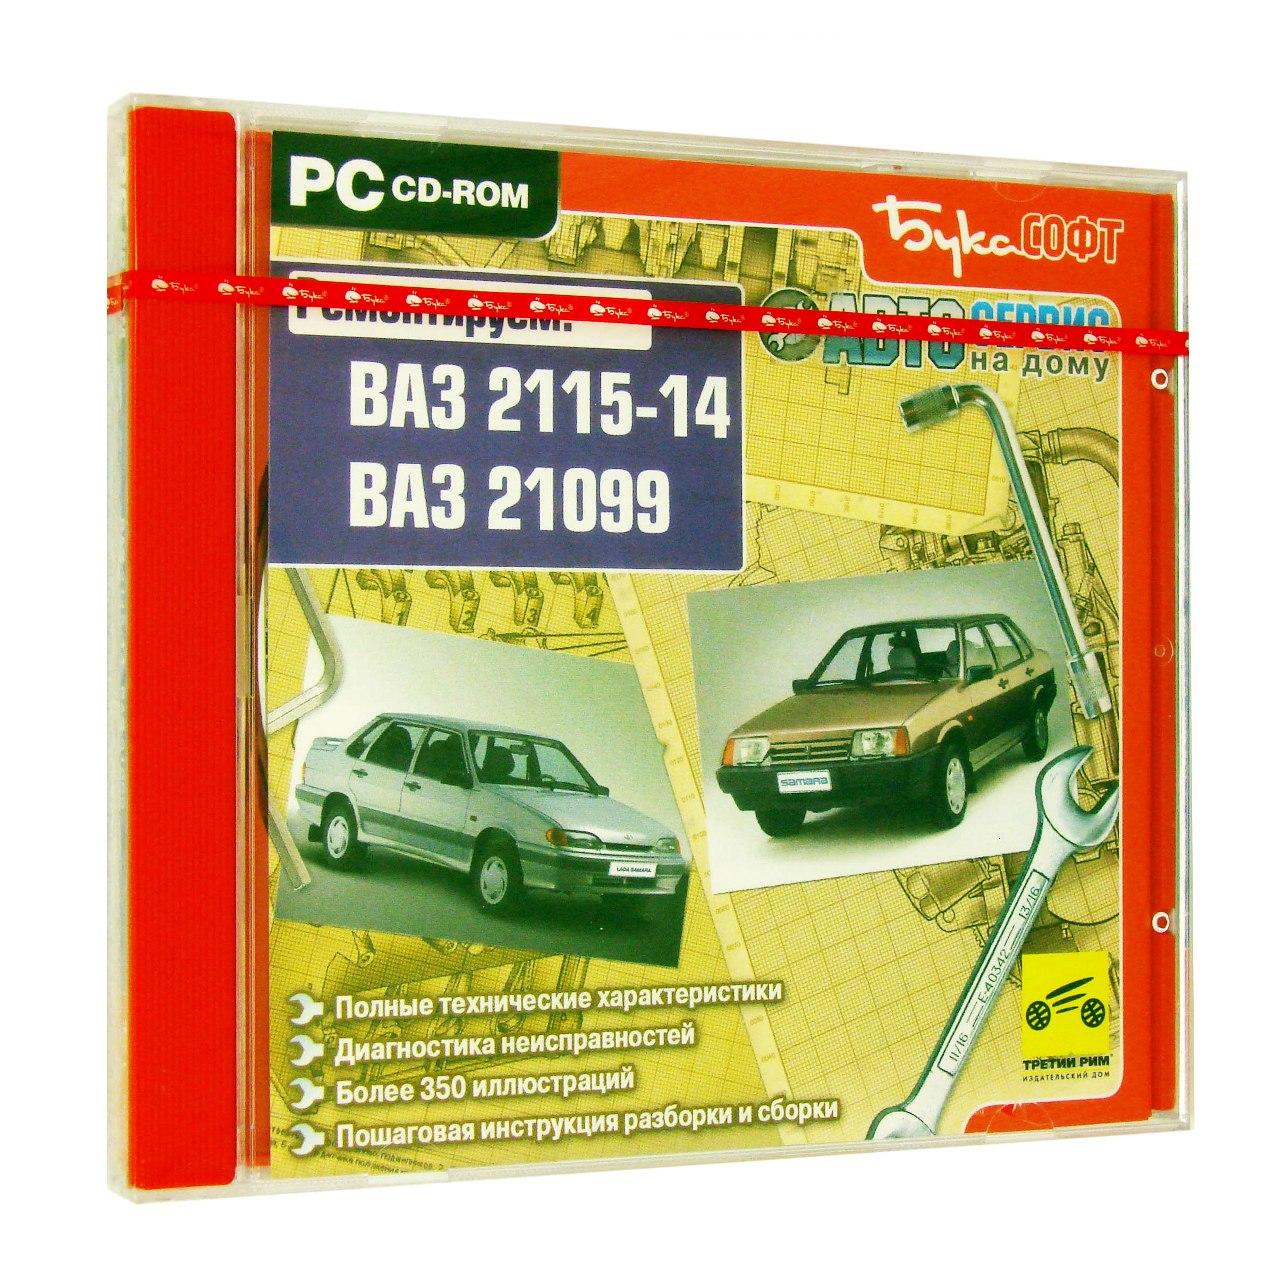 Компьютерный компакт-диск ВАЗ 2115. ВАЗ 21099. ’Автосервис на дому’. (ПК), фирма "Бука", 1CD